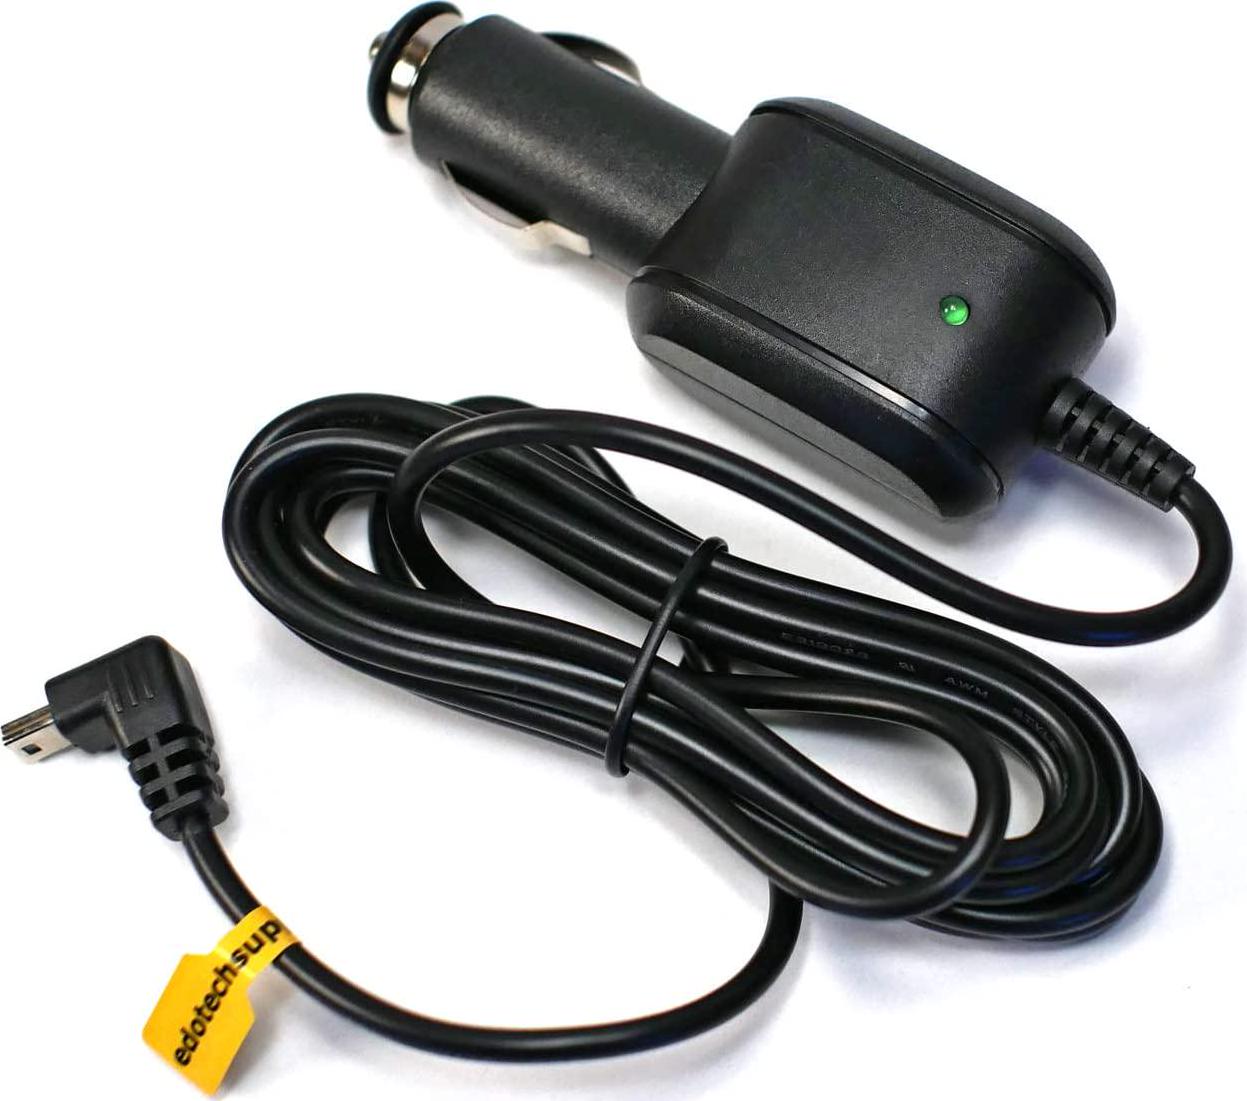 EDOTech, EDO Tech Mini USB Car Charger Power Cord for Garmin Nuvi 200 200w 205w 250 255w 260w 256w 1300 1350 1370 1390 1450 Dezl 560 570 760lmt 770lmthd 780lmt-s Navigator GPS (6.5 ft Long Cable)